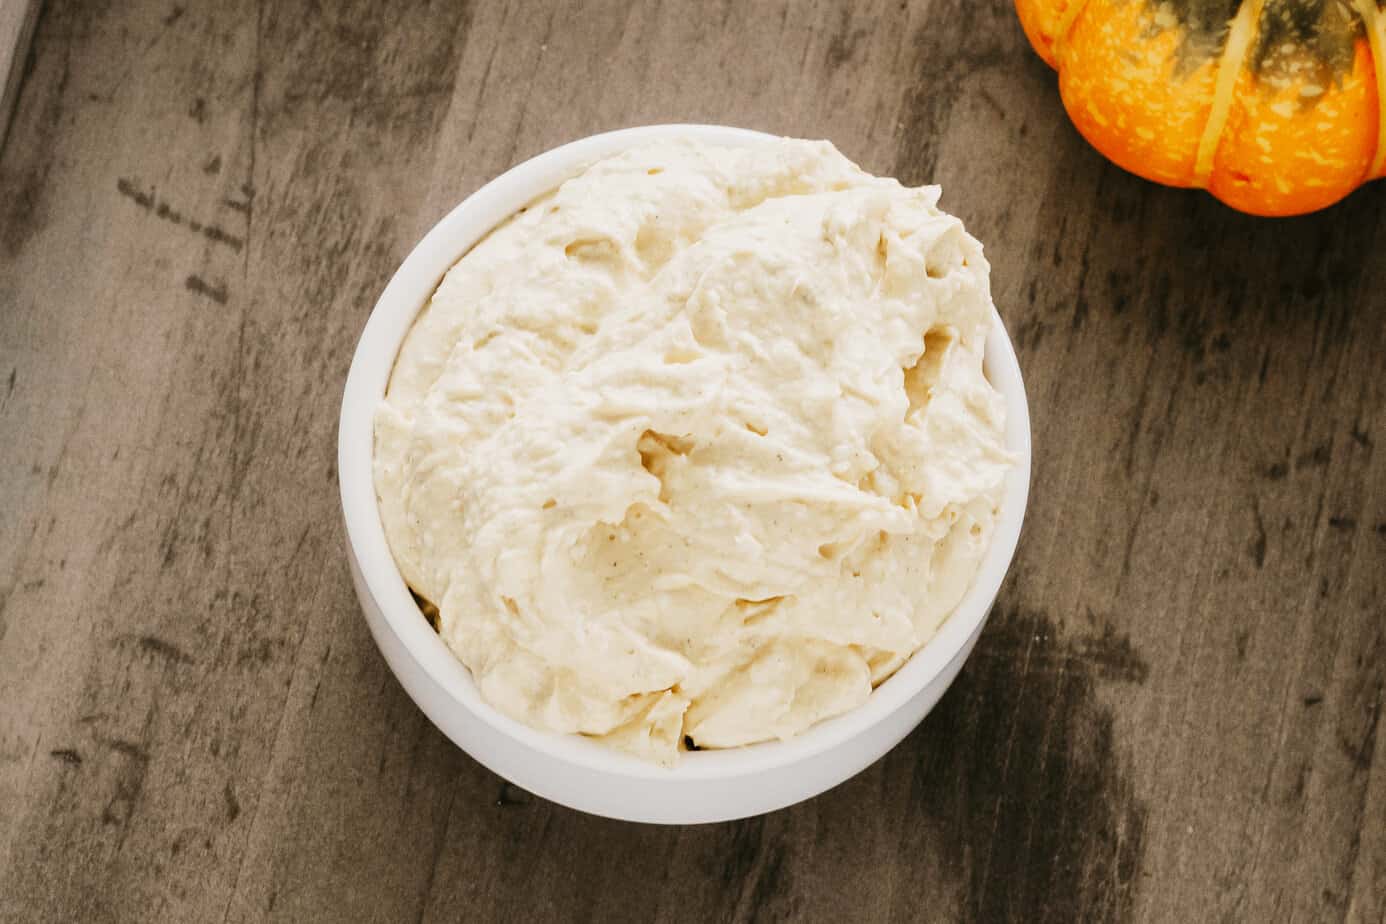 pumpkin cream cheese dip in a white bowl